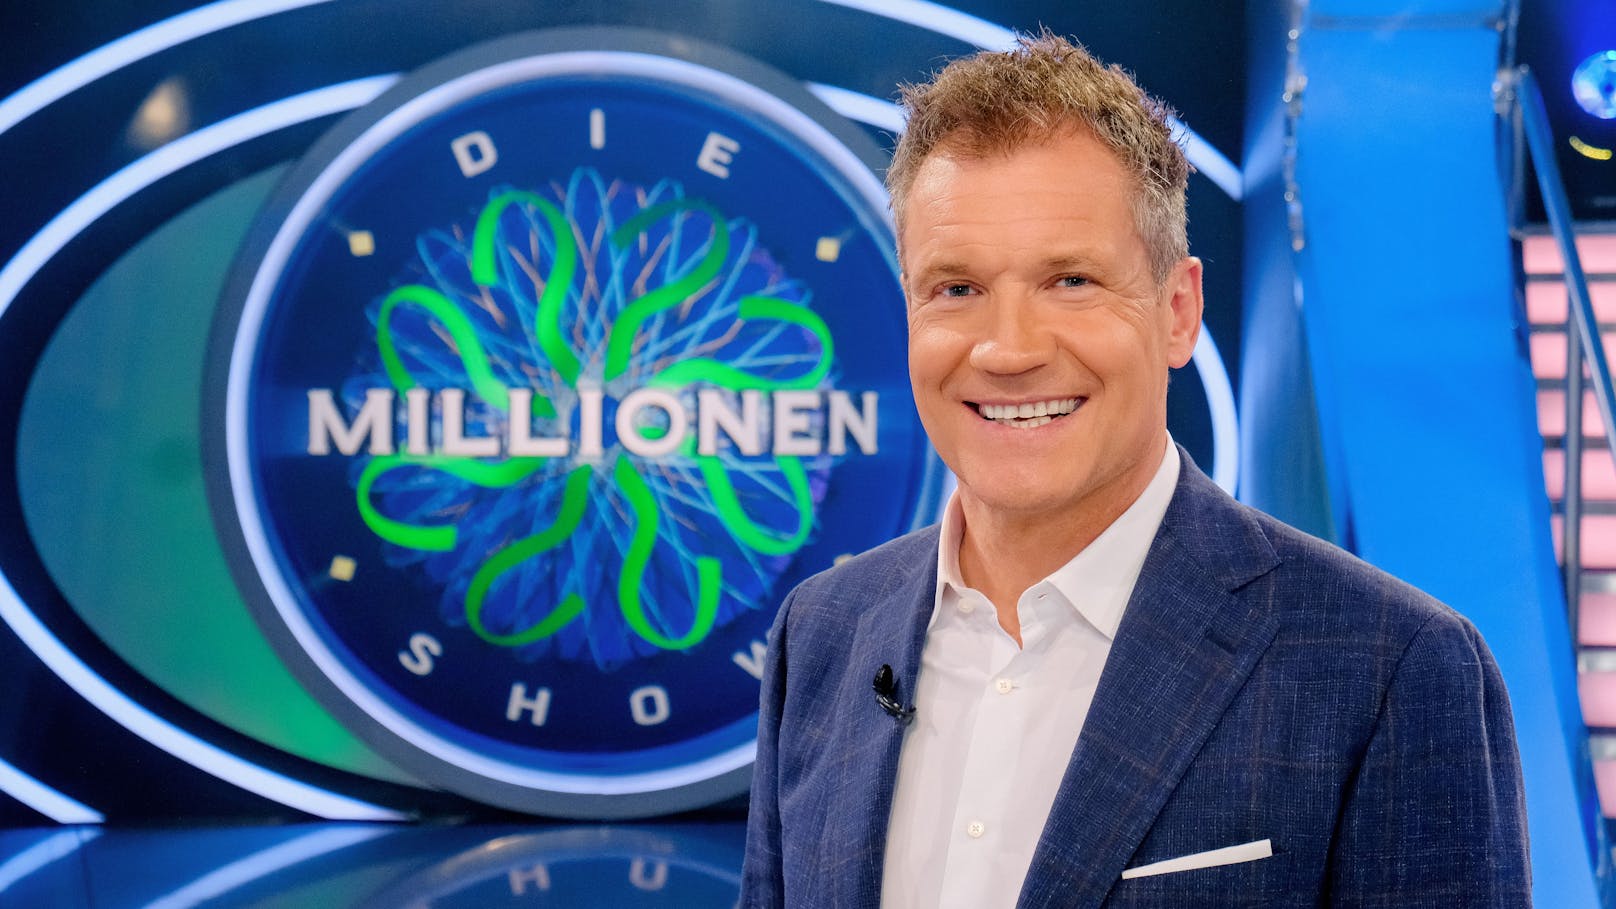 Abfuhr für Armin Assinger: ORF streicht "Millionenshow"